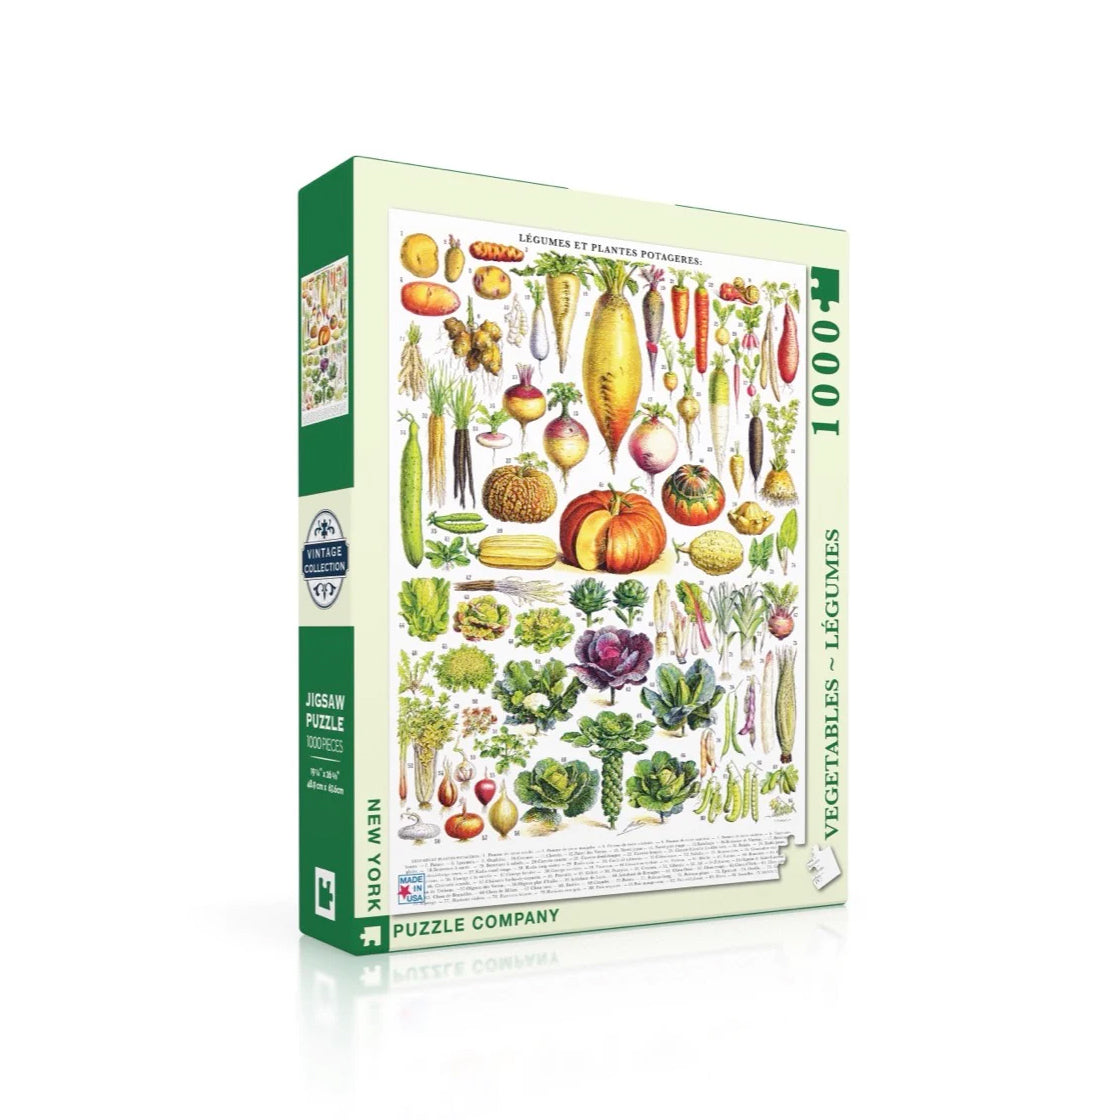 Puzzel Vintage Images Vegetables-Groente│New York Puzzle Company 1000 stukjes│art. PD635│verpakking met schaduw│